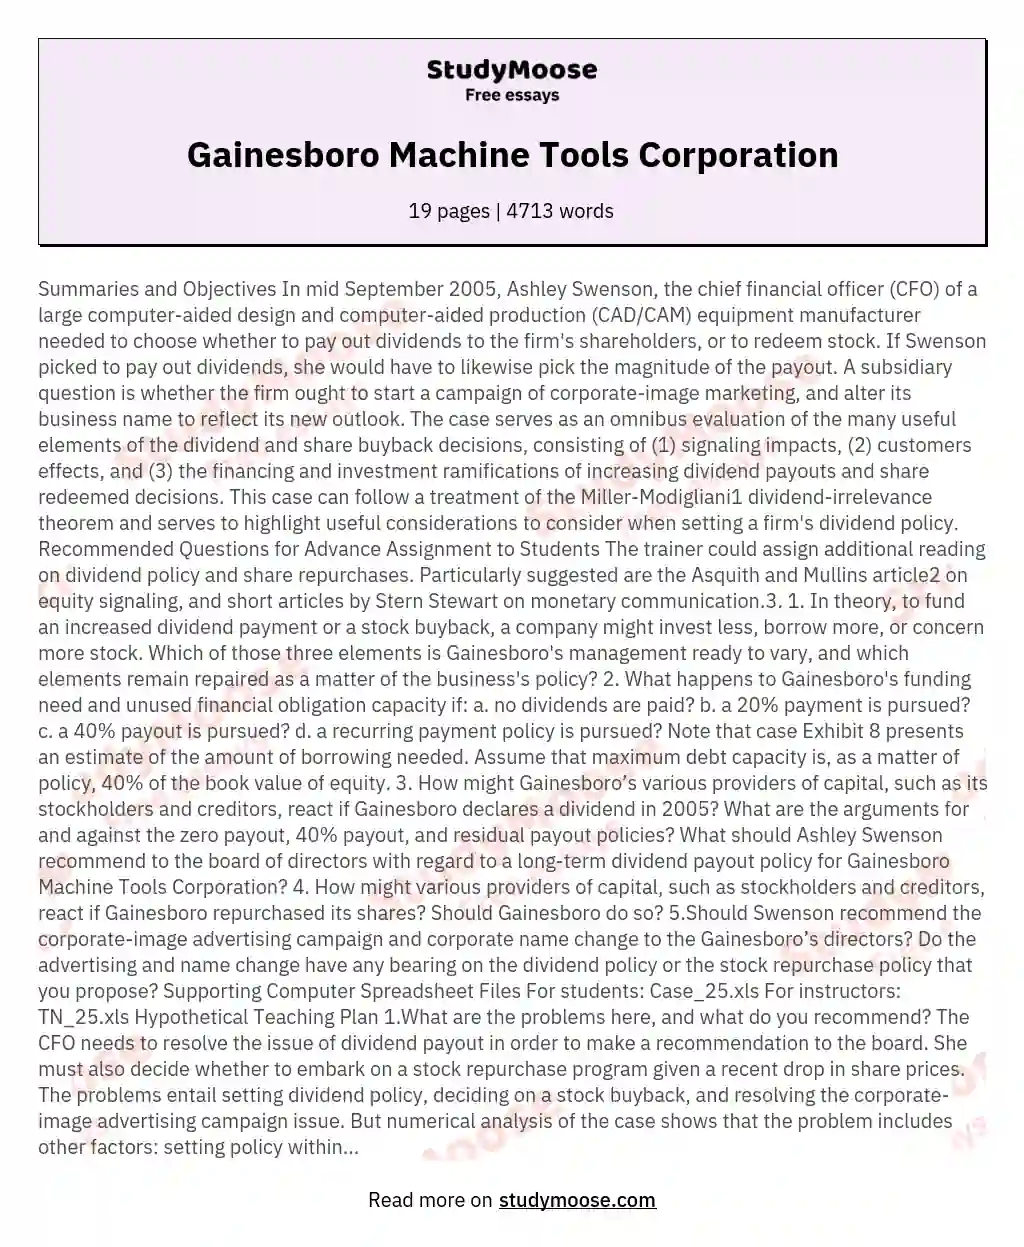 Gainesboro Machine Tools Corporation